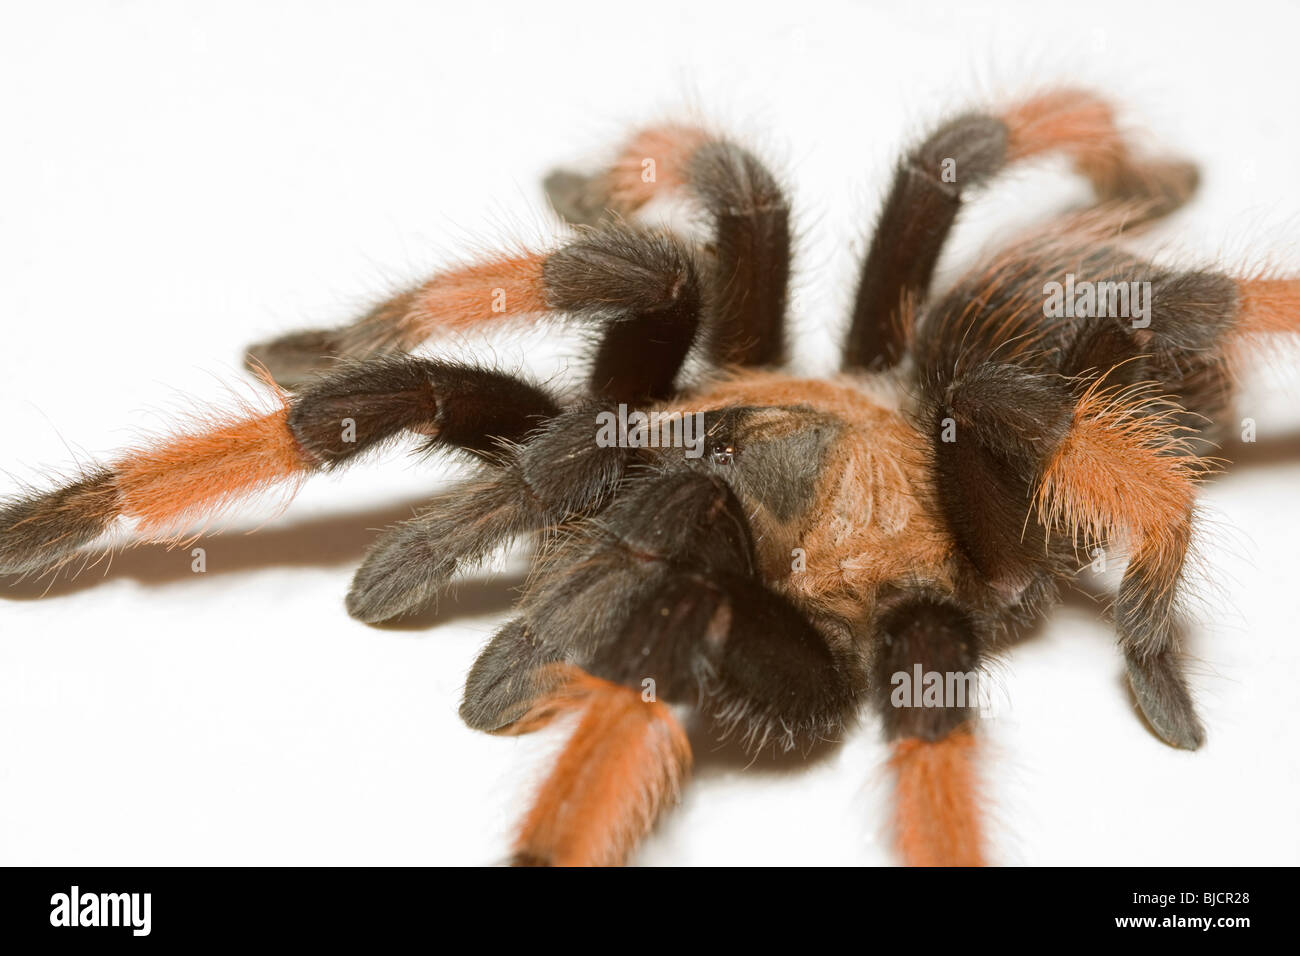 Bird spider,Brachypelma emilia Stock Photo